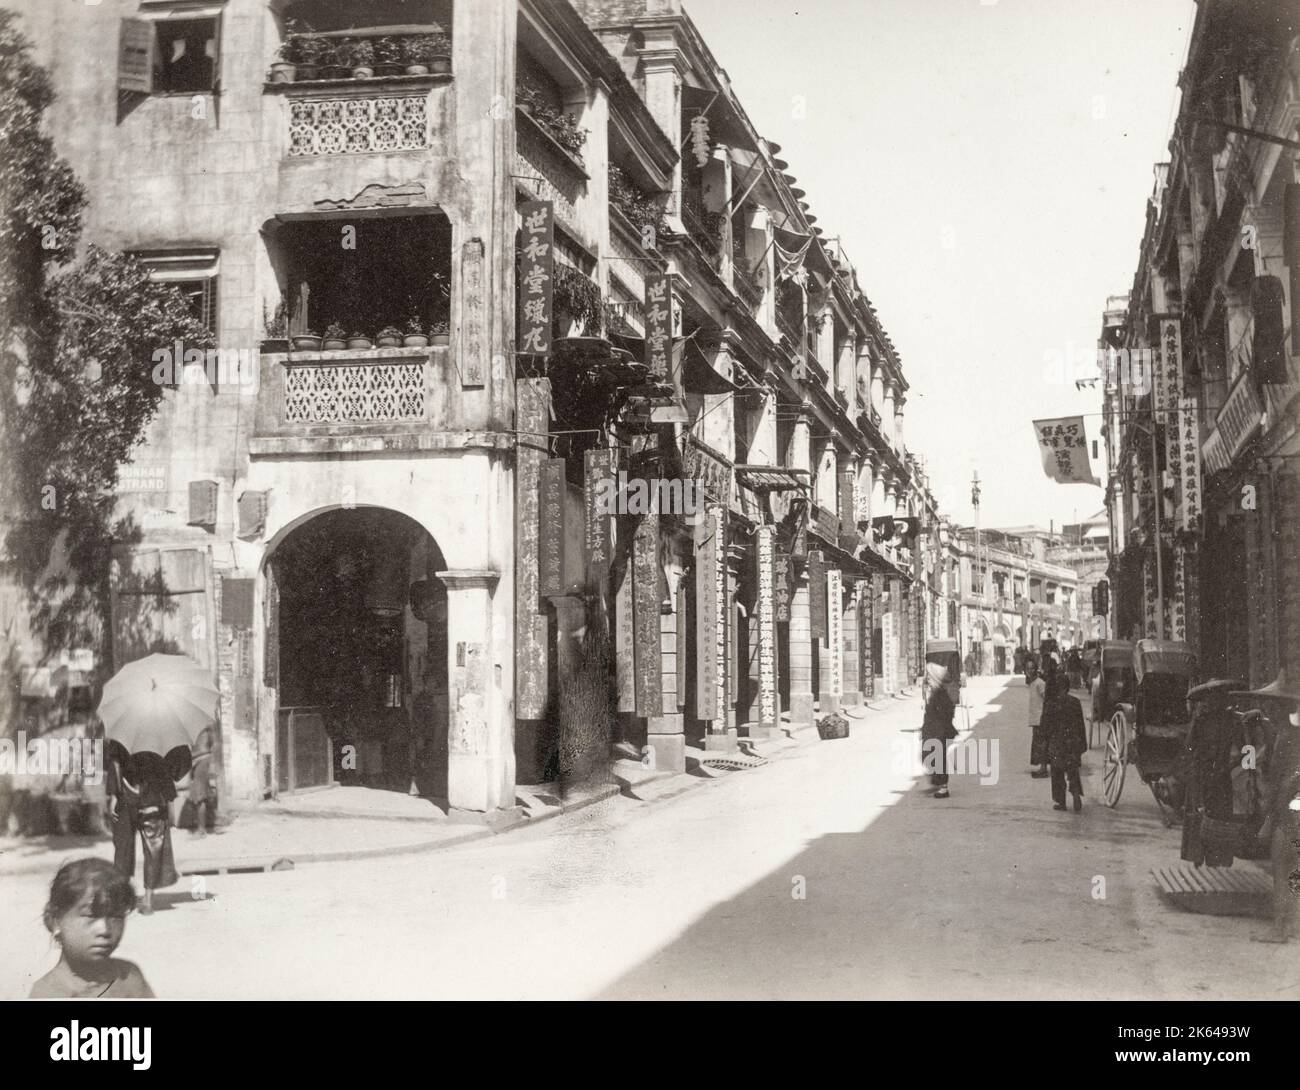 Vintage 19. Jahrhundert Foto: Hong Kong (China) c.1880s - Chinesisches Viertel der Stadt. Stockfoto